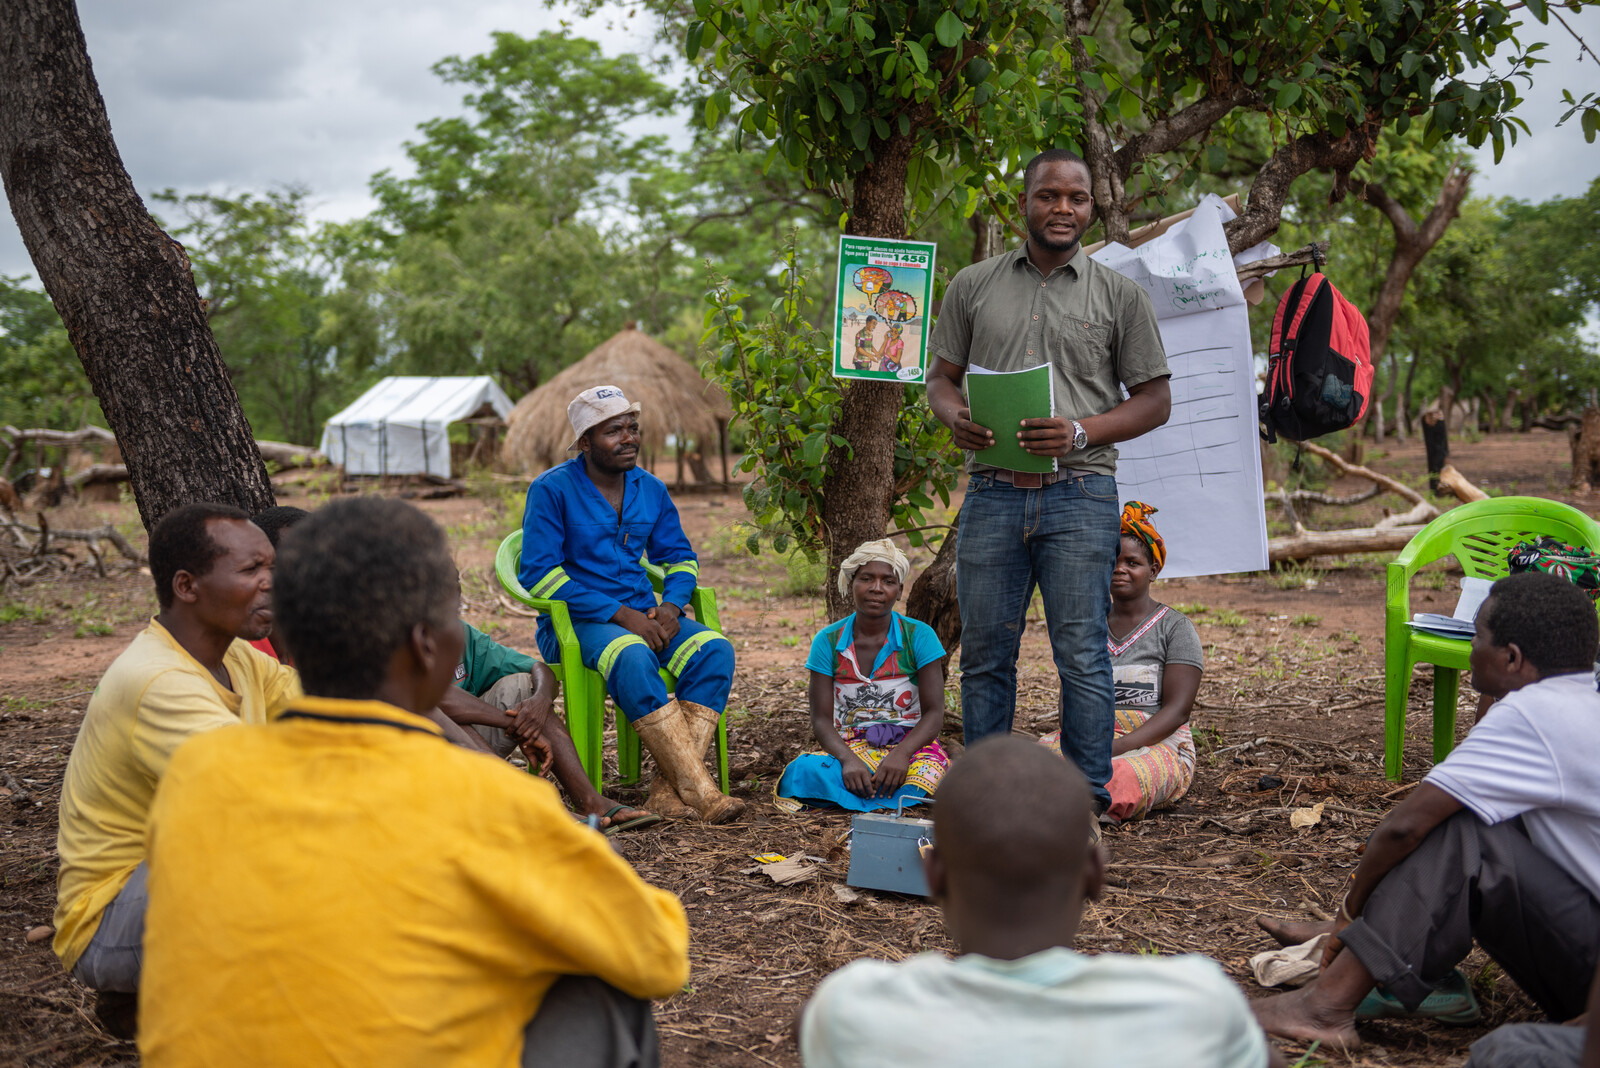 Katastrophenvorsorge in Mosambik: Ein Helfer erklärt einer Dorfgemeinde, wie wichtig Geldanlagen in Krisenzeiten sind